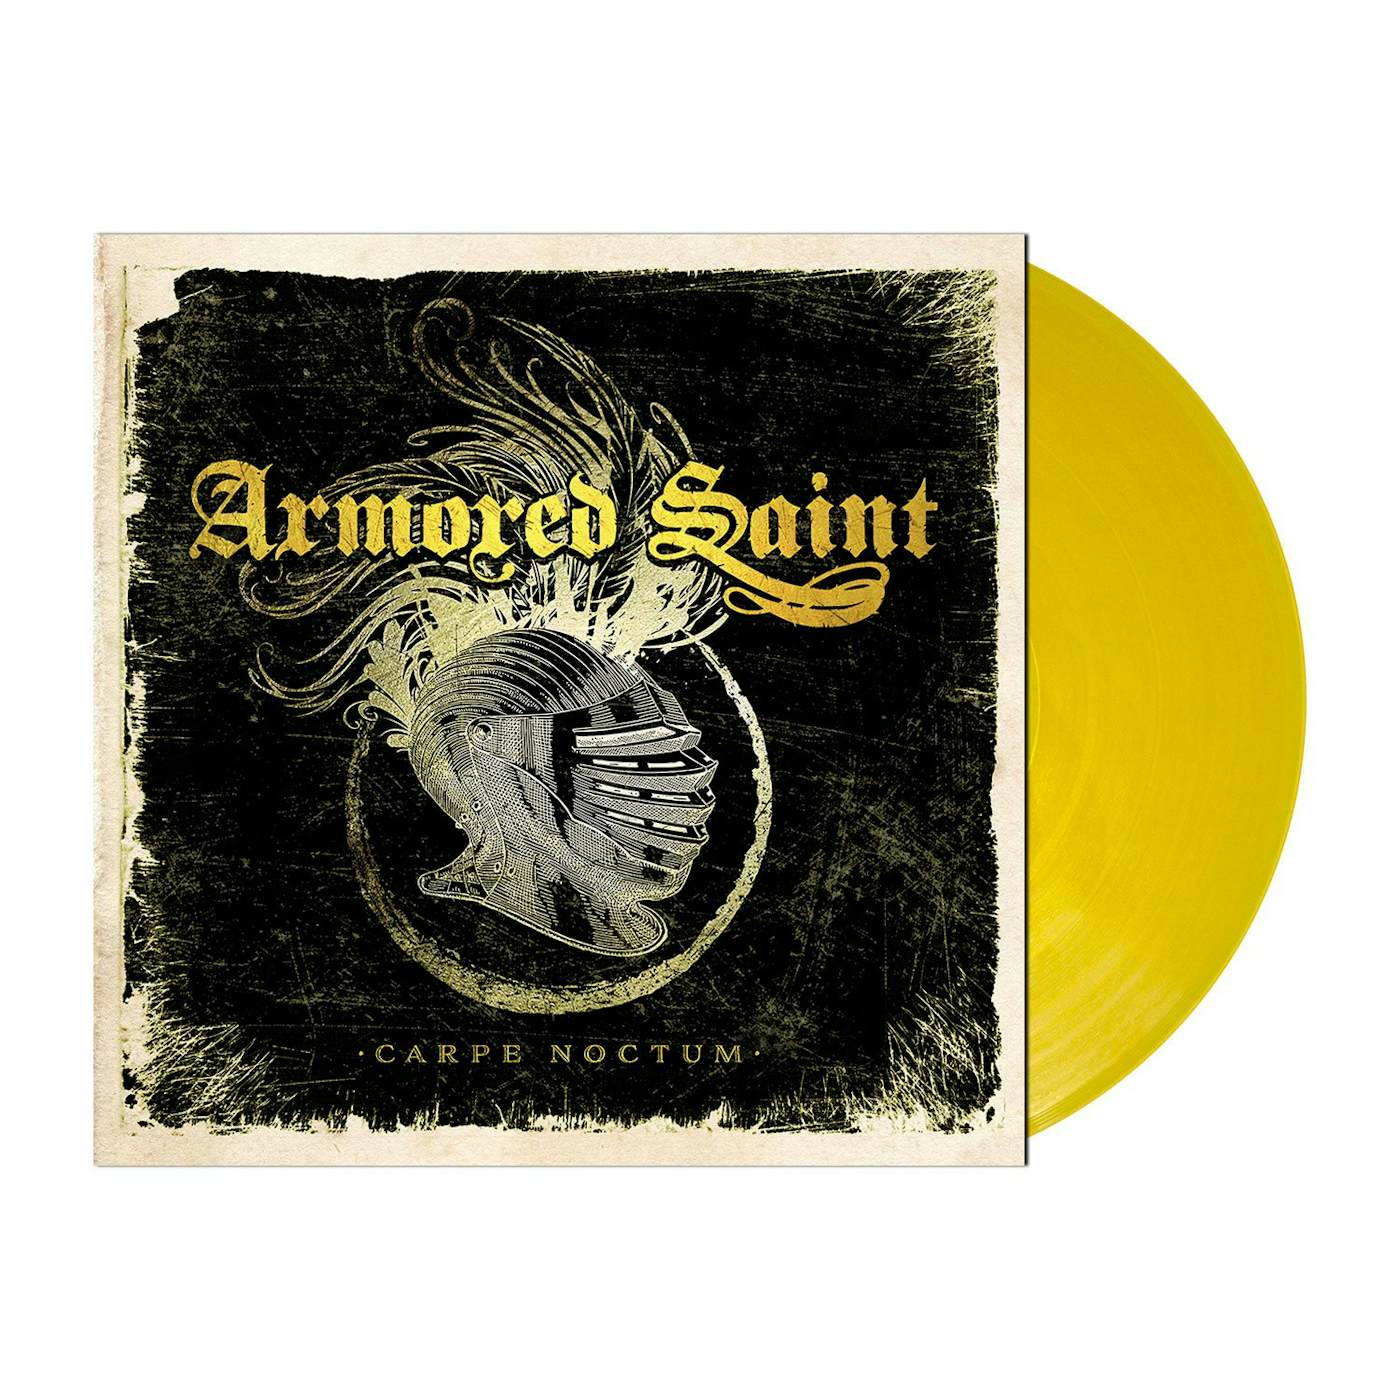 Armored Saint "Carpe Noctum - Transparent Orange LP" 12" (Vinyl)